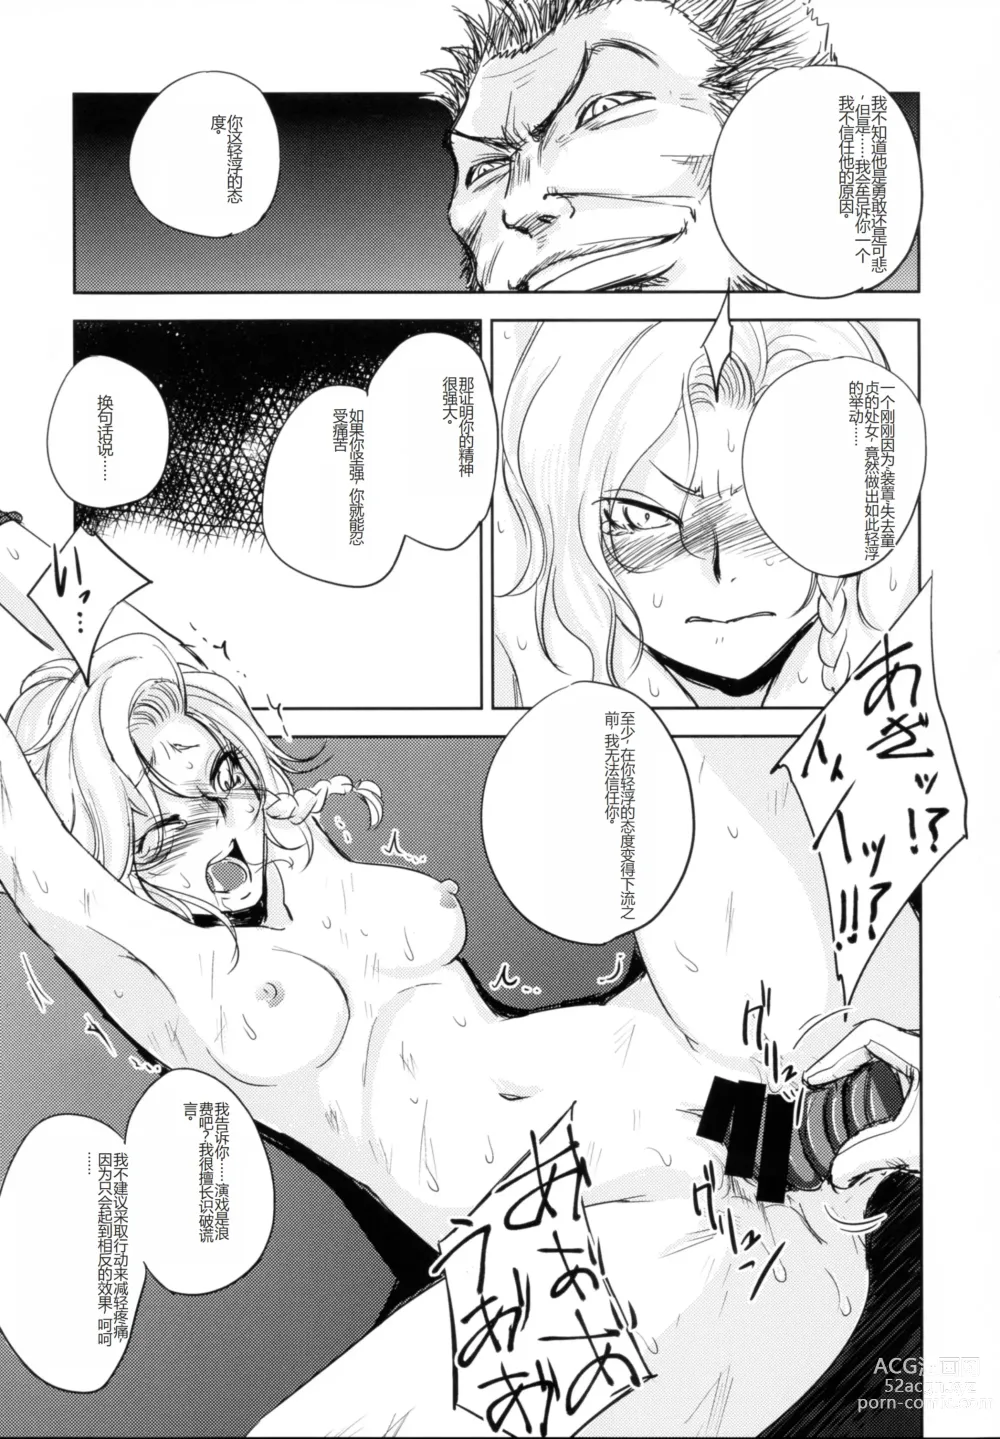 Page 31 of doujinshi GRASSENS WAR ANOTHER STORY Ex #03 Node Shinkou III